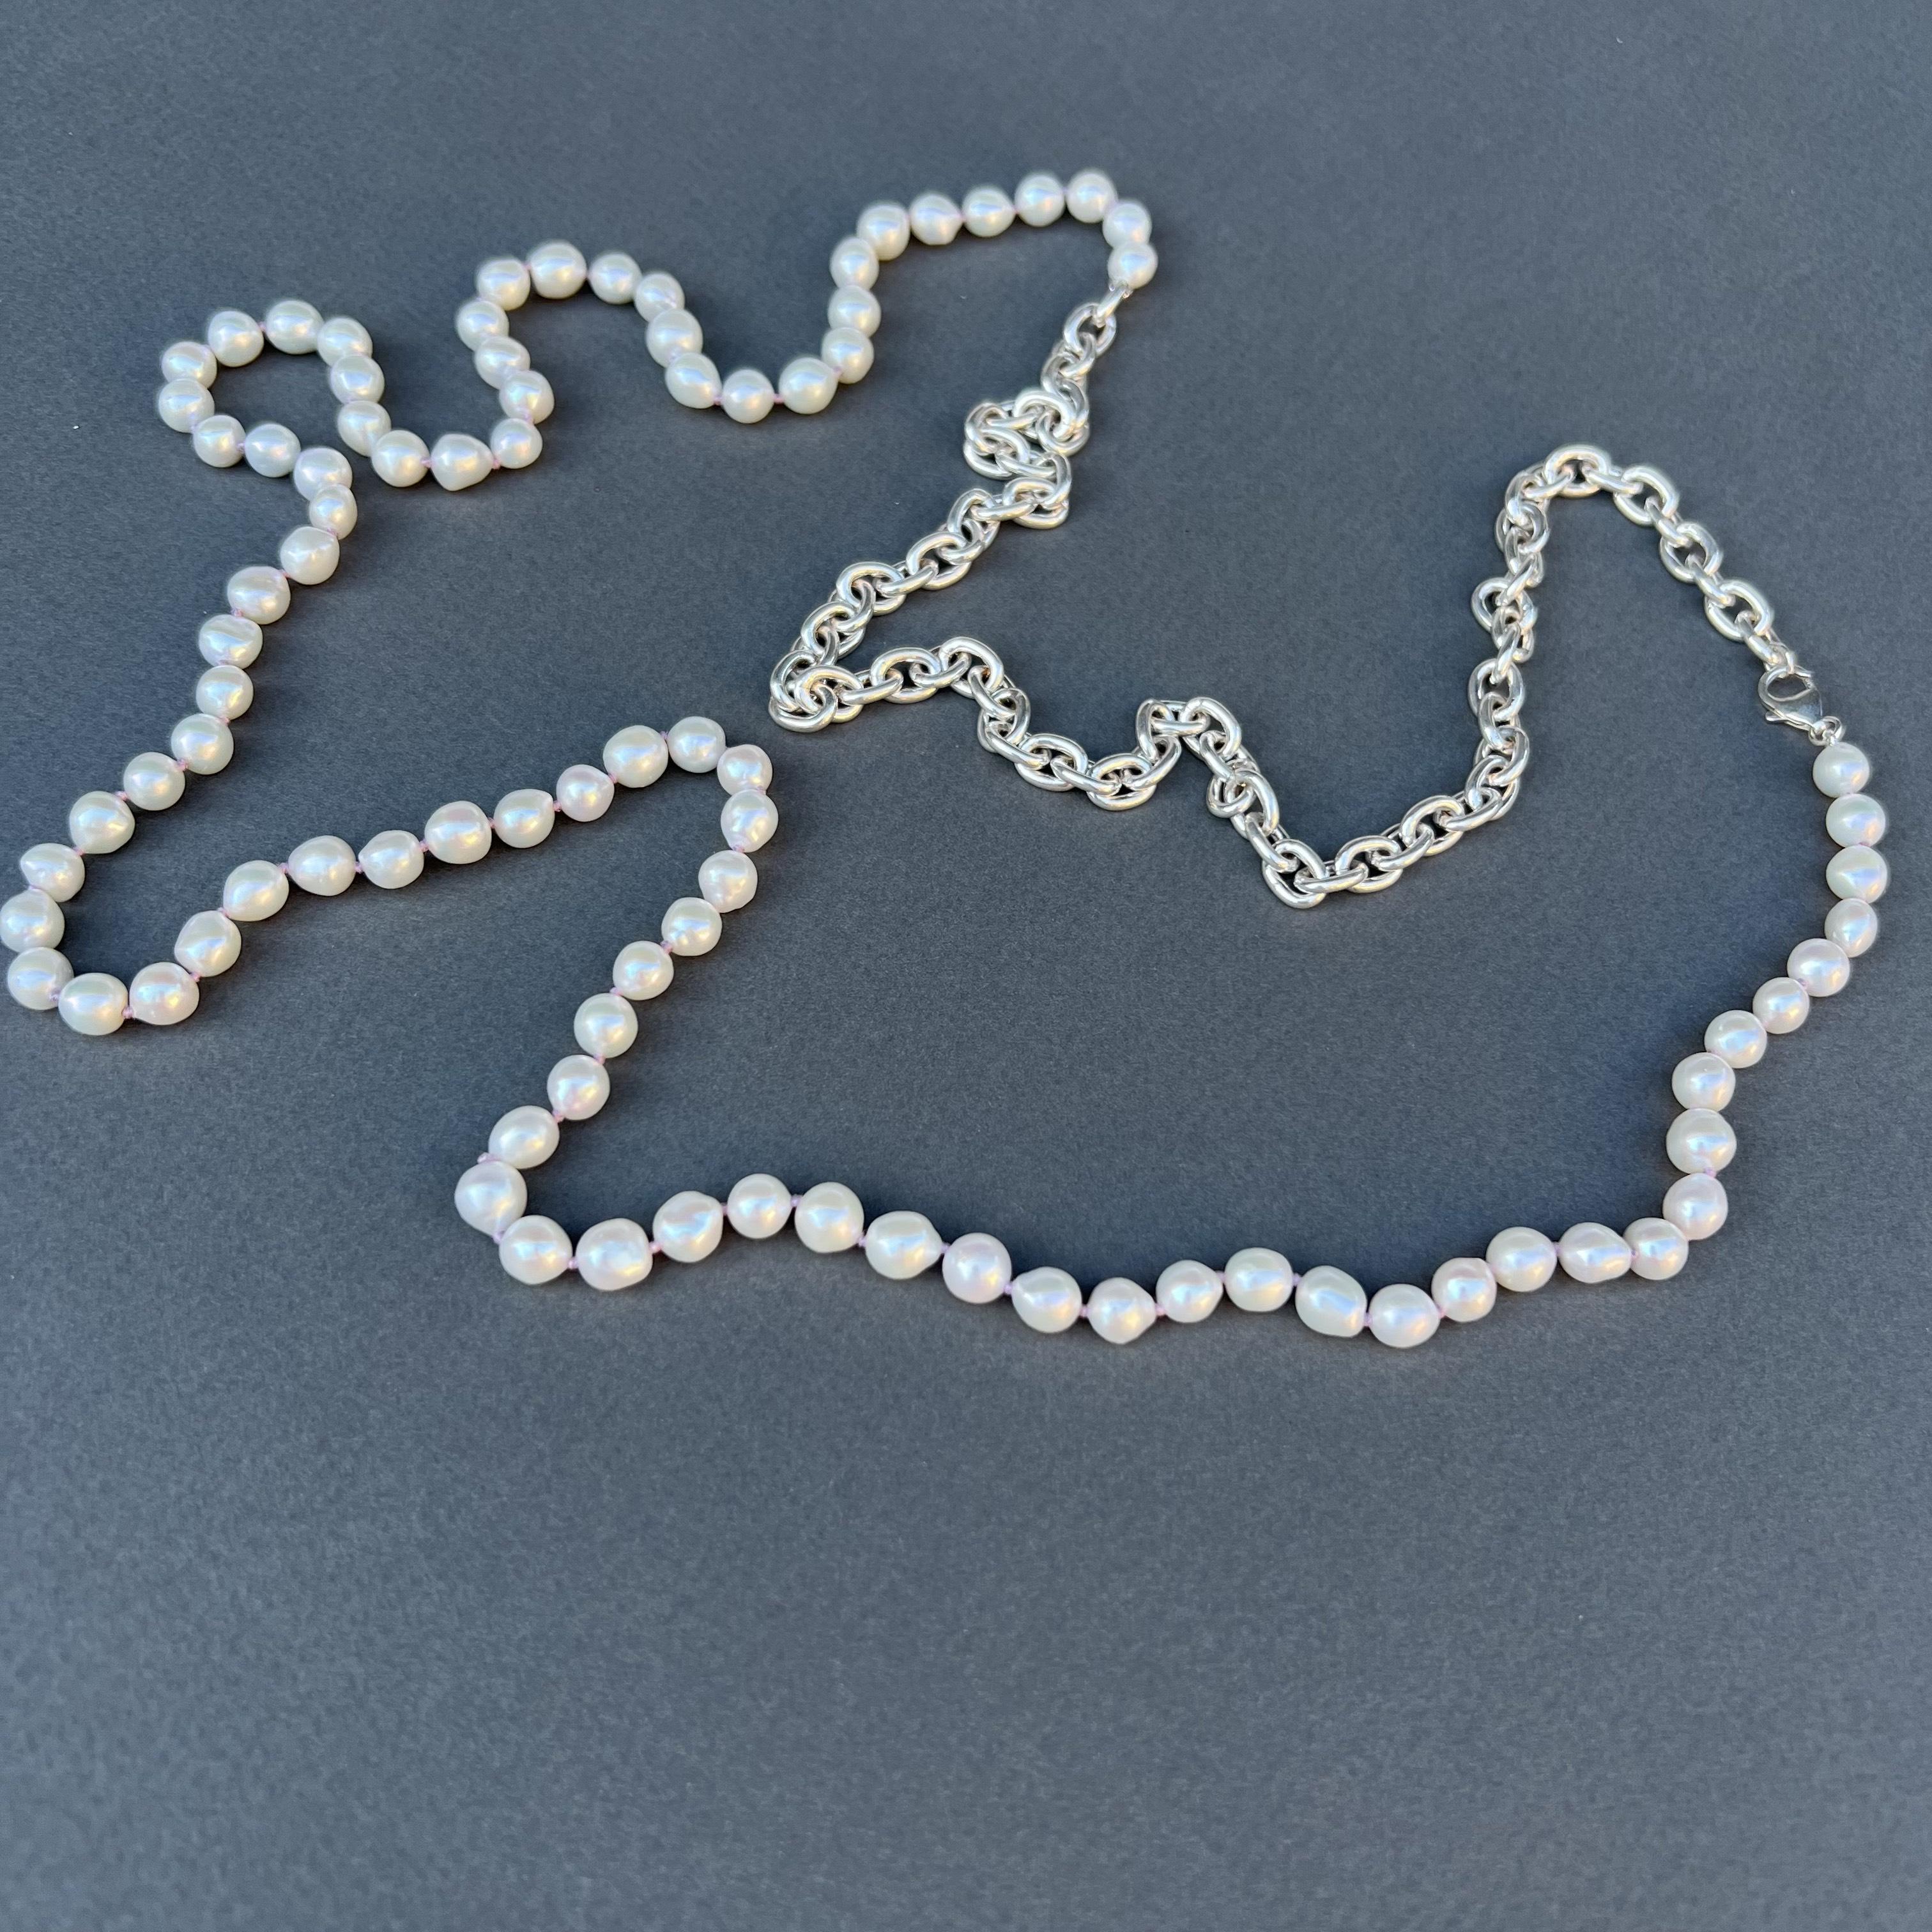 Weiße Perlenkette Silberkette - Lila Seidenfaden Knoten zwischen jeder Perle 
Silber ist massiv 925 Silber
36